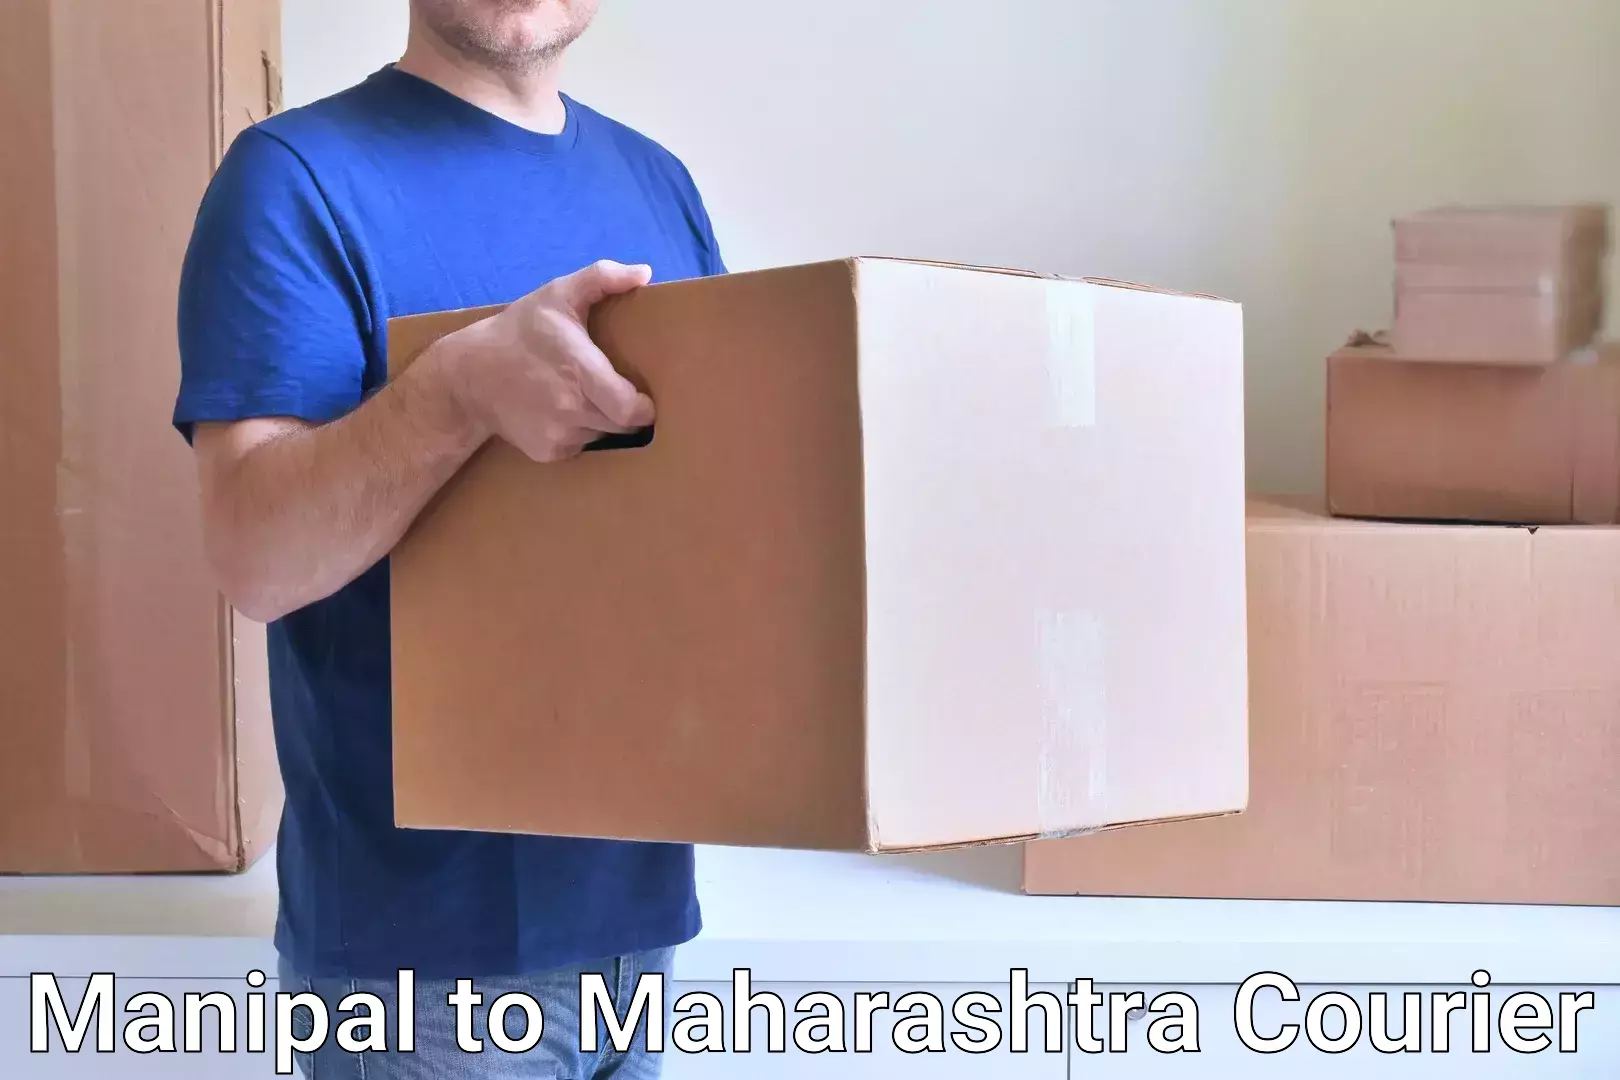 Affordable international shipping Manipal to Maharashtra